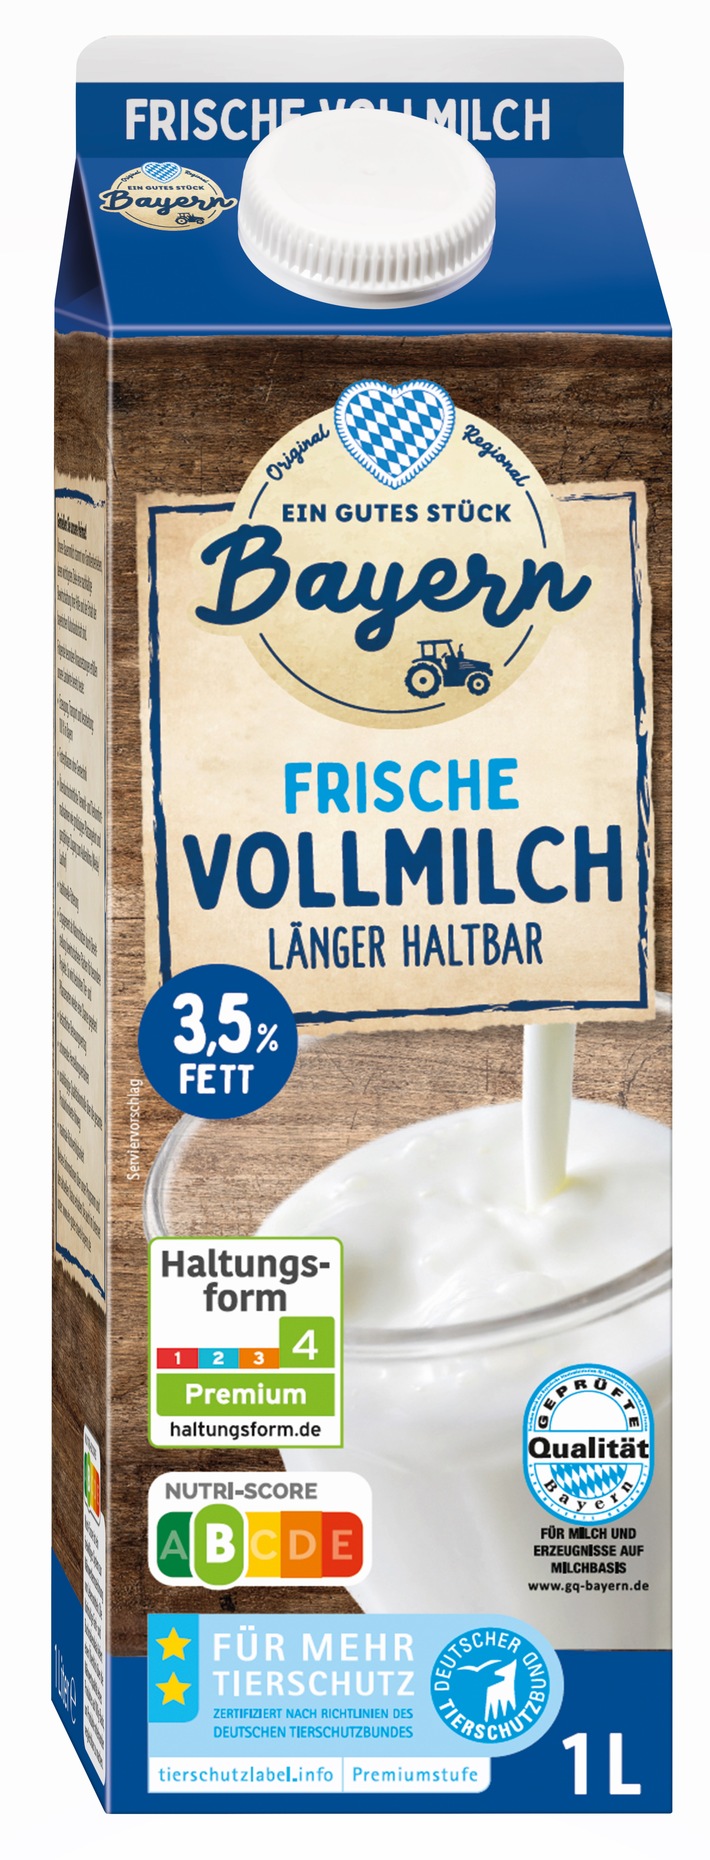 Lidl_Ein gutes Stück Bayern Milch.jpg